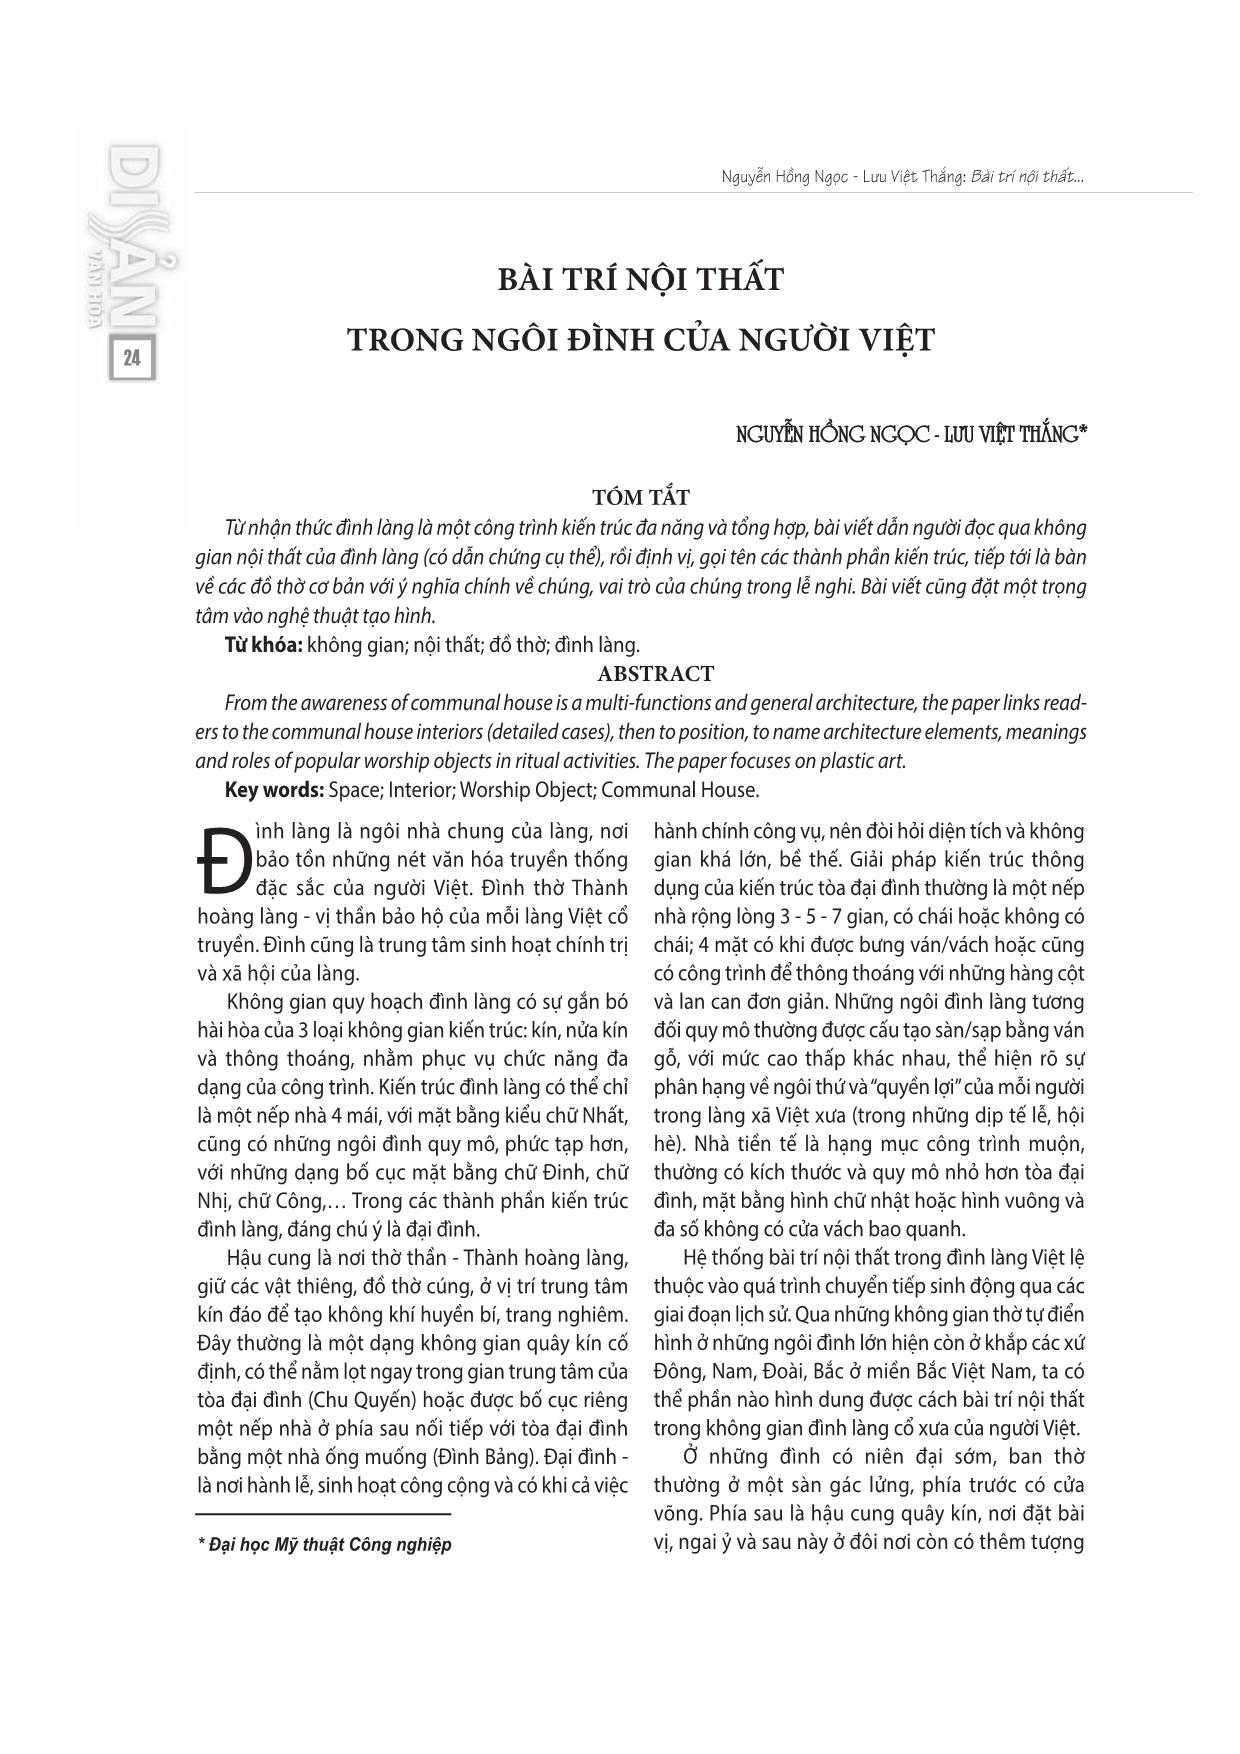 Bài trí nội thất trong ngôi đình của người Việt trang 1